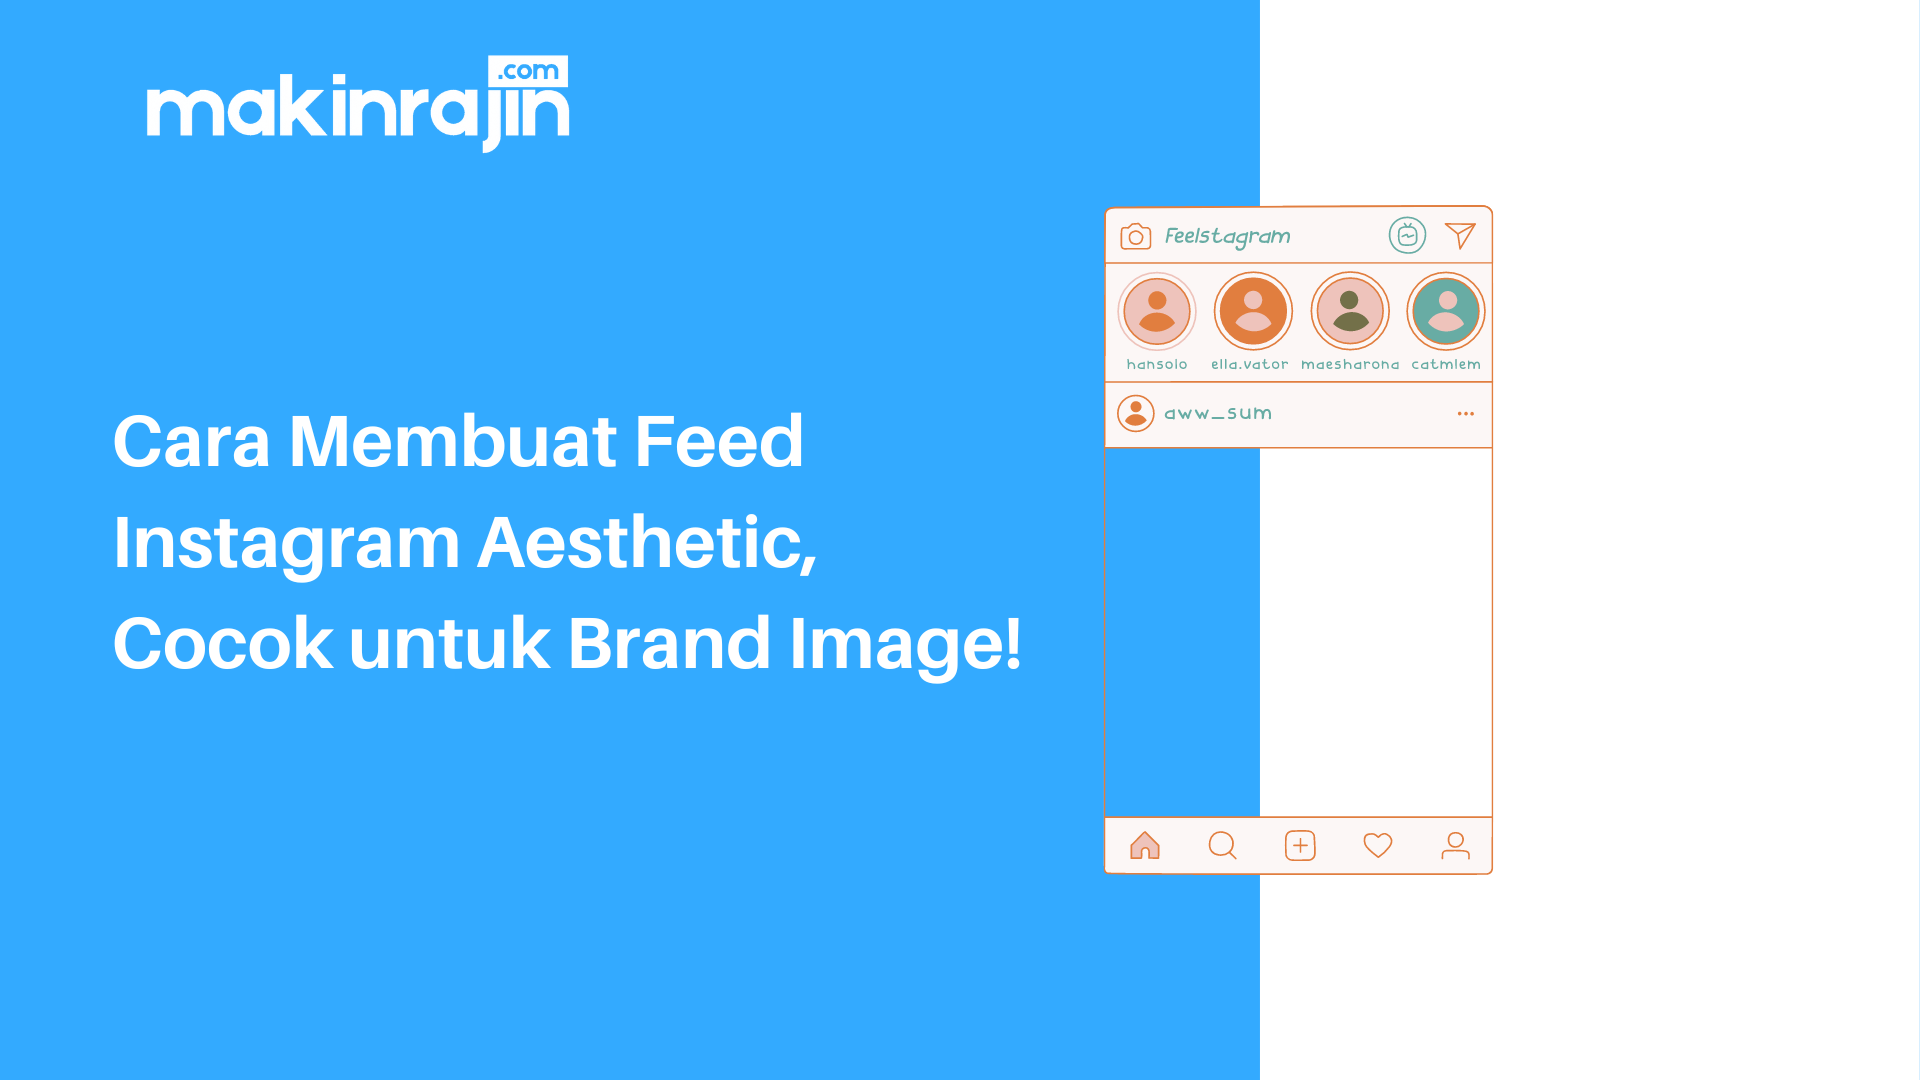 Cara Membuat Feed Instagram Aesthetic, Cocok untuk Brand Image.